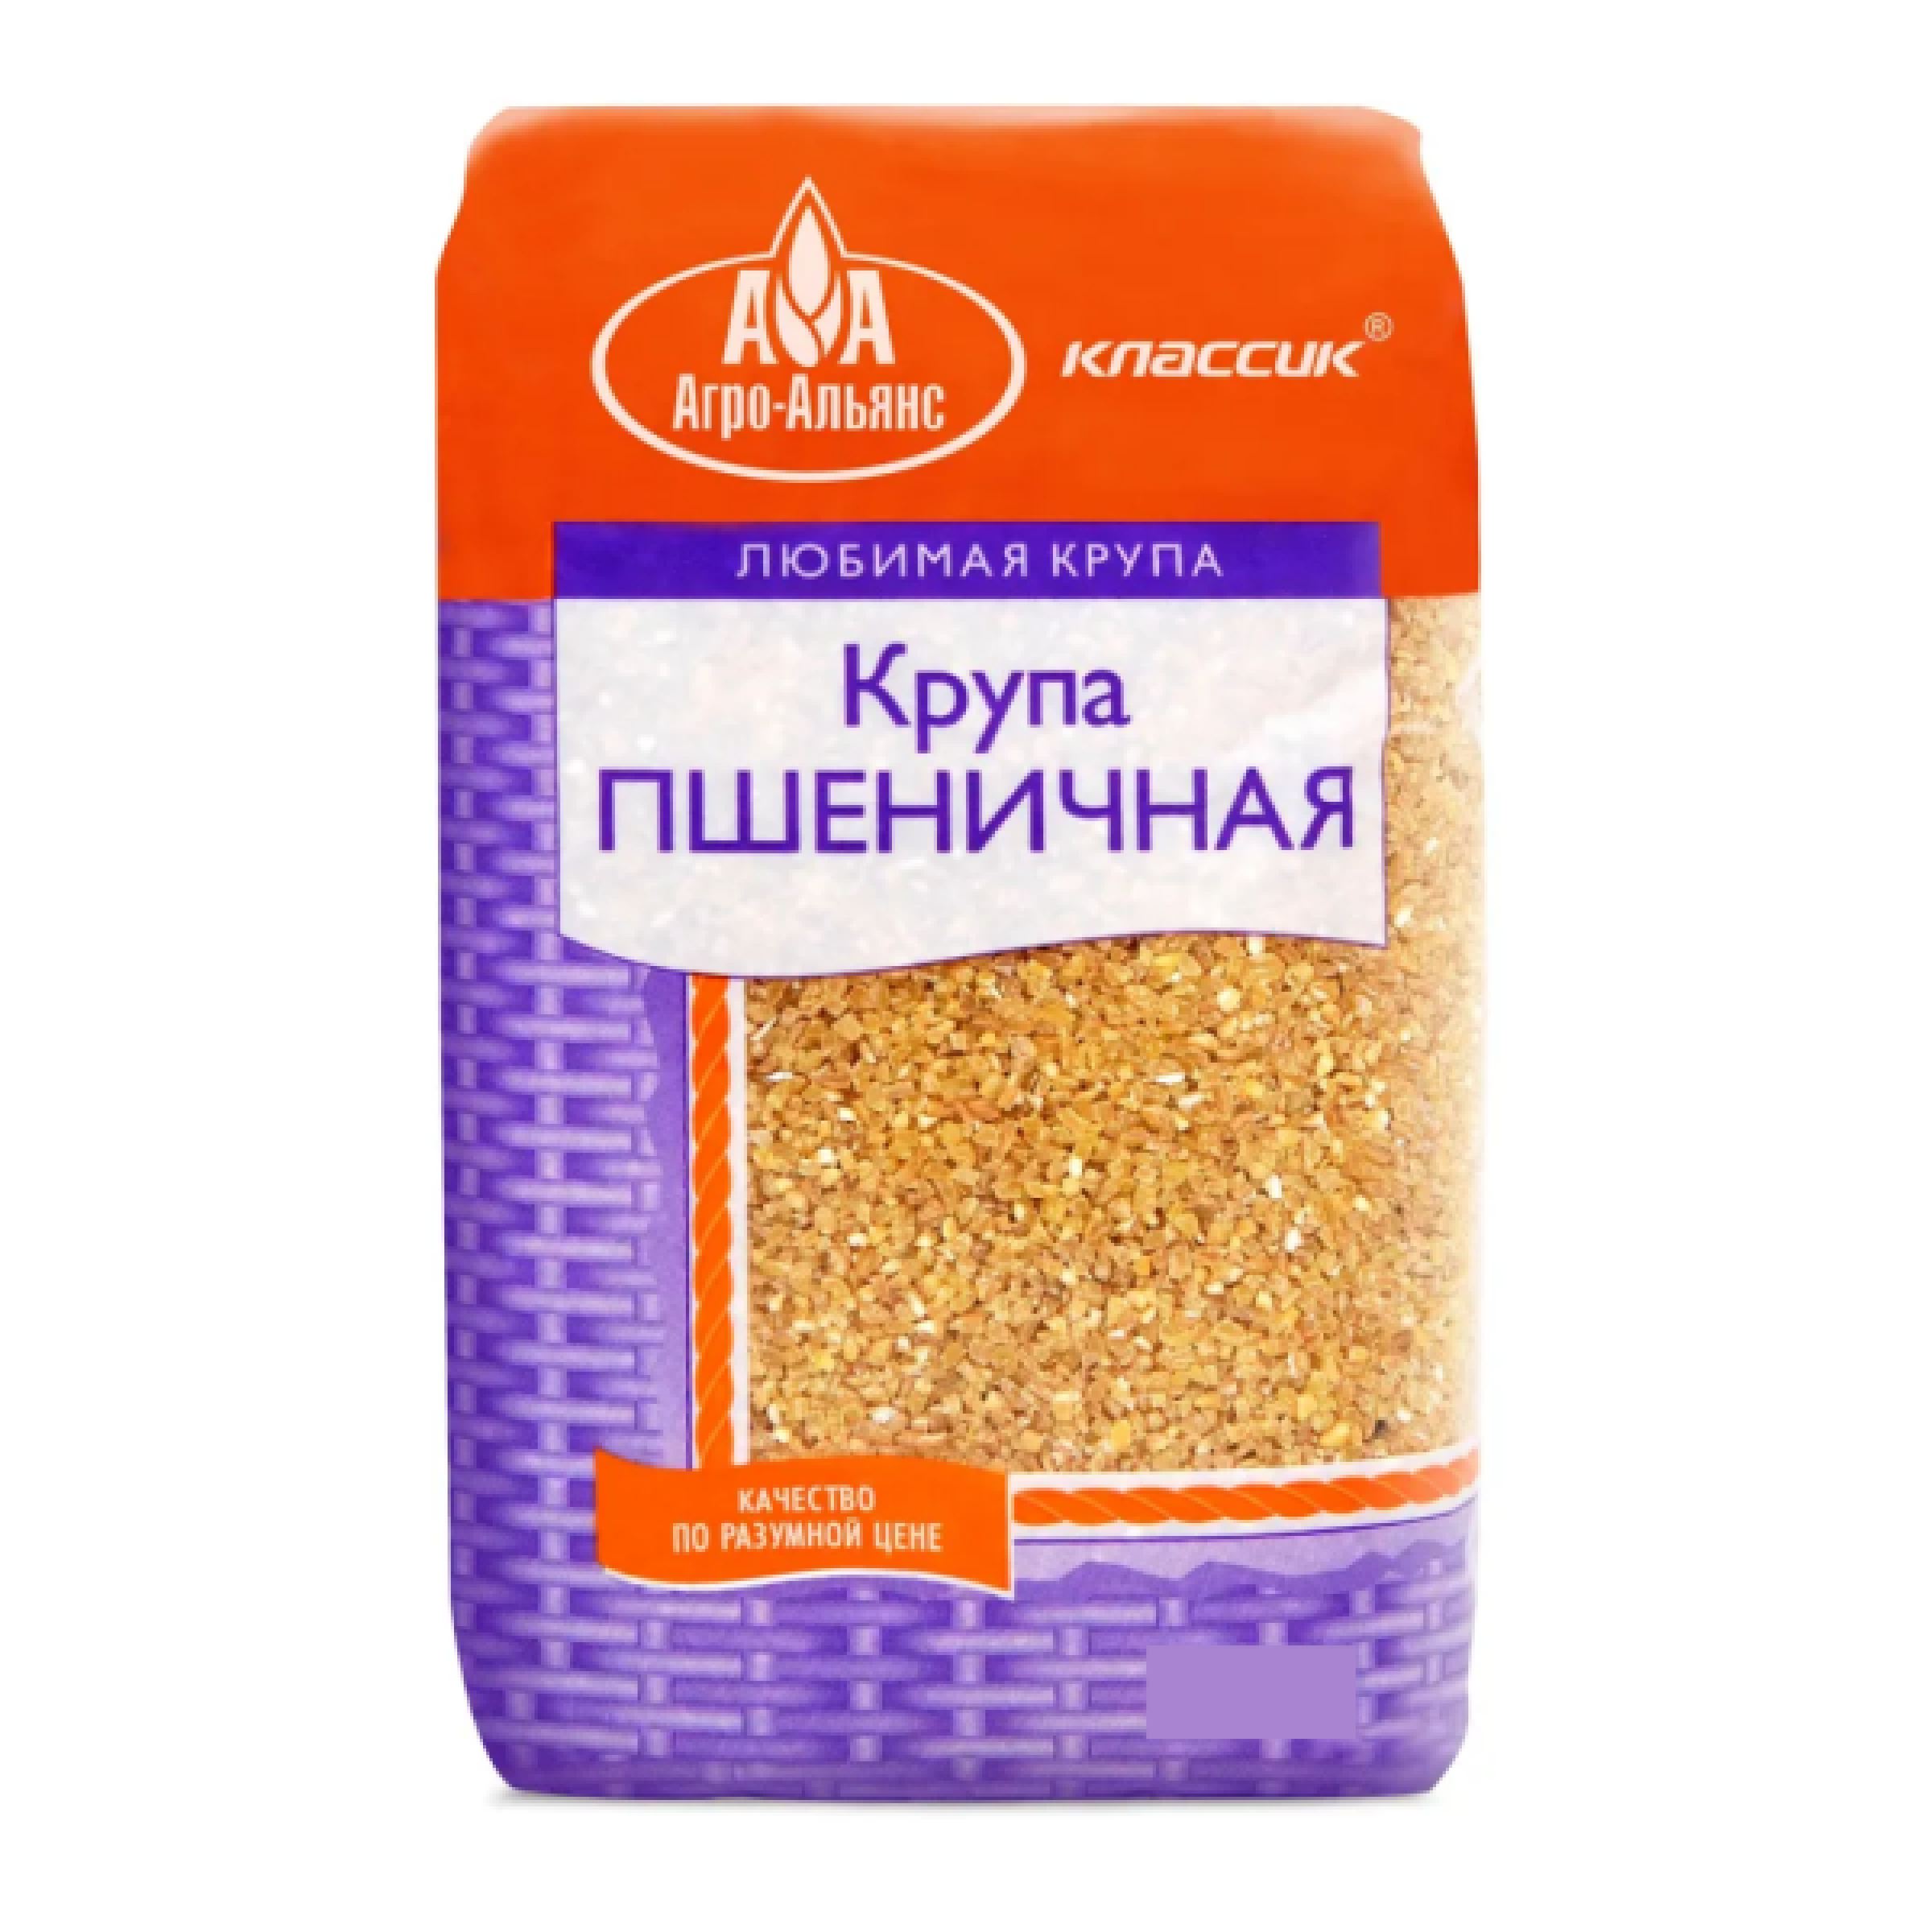 Пшеничная крупа Агро-Альянс Полтавская Классик, 600 г